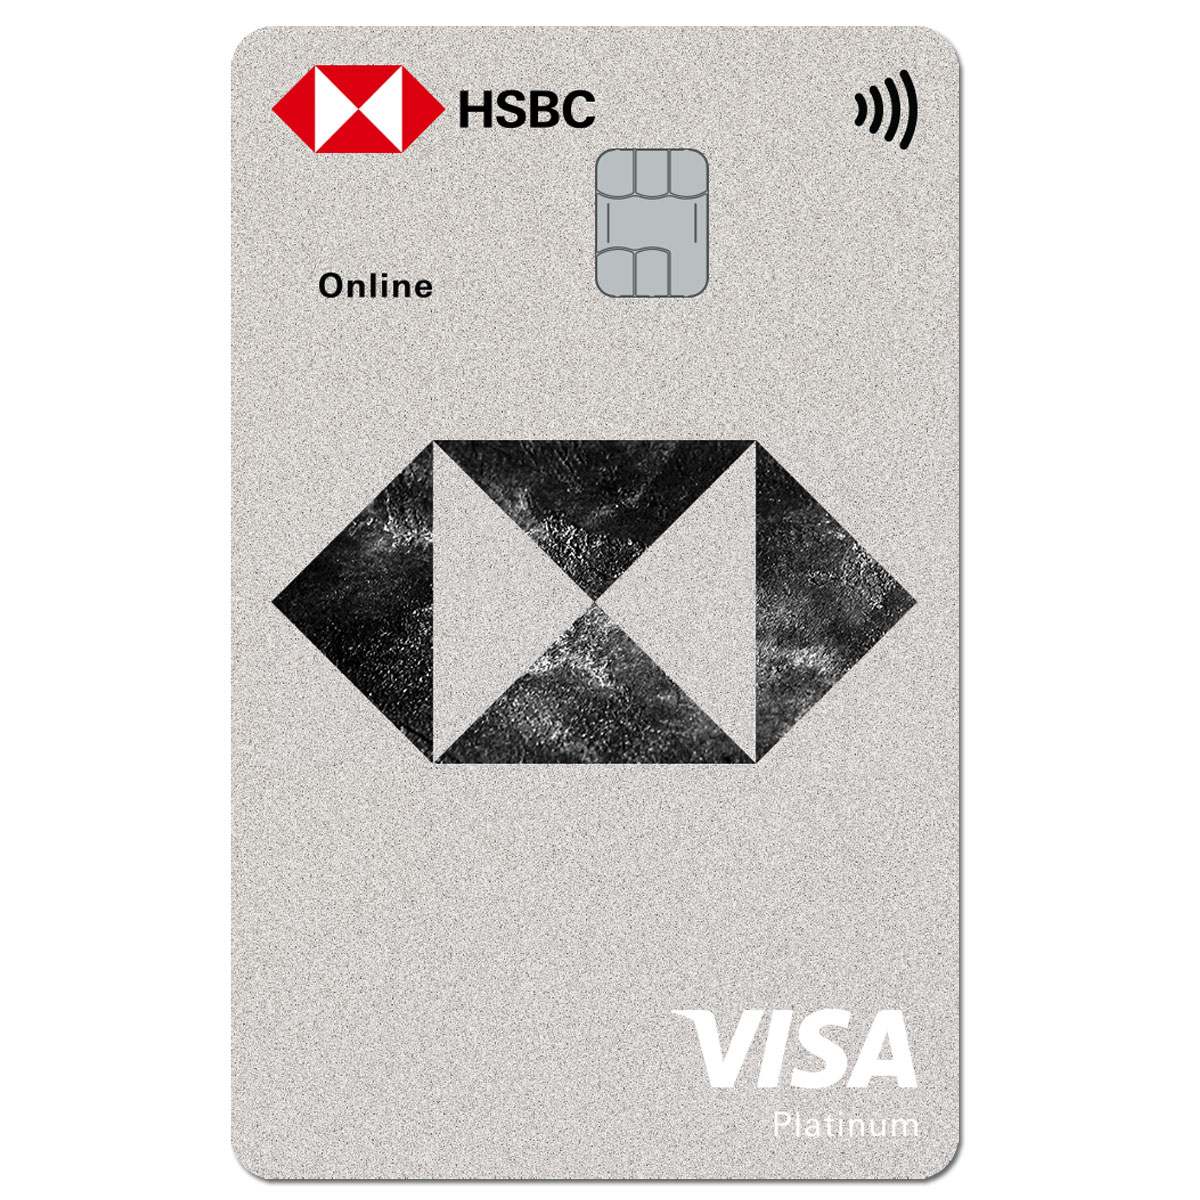 Thẻ tín dụng HSBC là công cụ tài chính đầy tiềm năng cho giới doanh nhân và những người có nhu cầu sử dụng dịch vụ tài chính. Với nhiều ưu đãi và tiện ích, bạn có thể sử dụng thẻ thông minh này để thanh toán tất cả các dịch vụ, mua sắm và tiêu dùng hàng ngày. Với HSBC, tài chính của bạn sẽ được quản lý thông minh hơn và tài trợ cho các dự án kinh doanh hoặc cá nhân sẽ trở nên dễ dàng hơn.